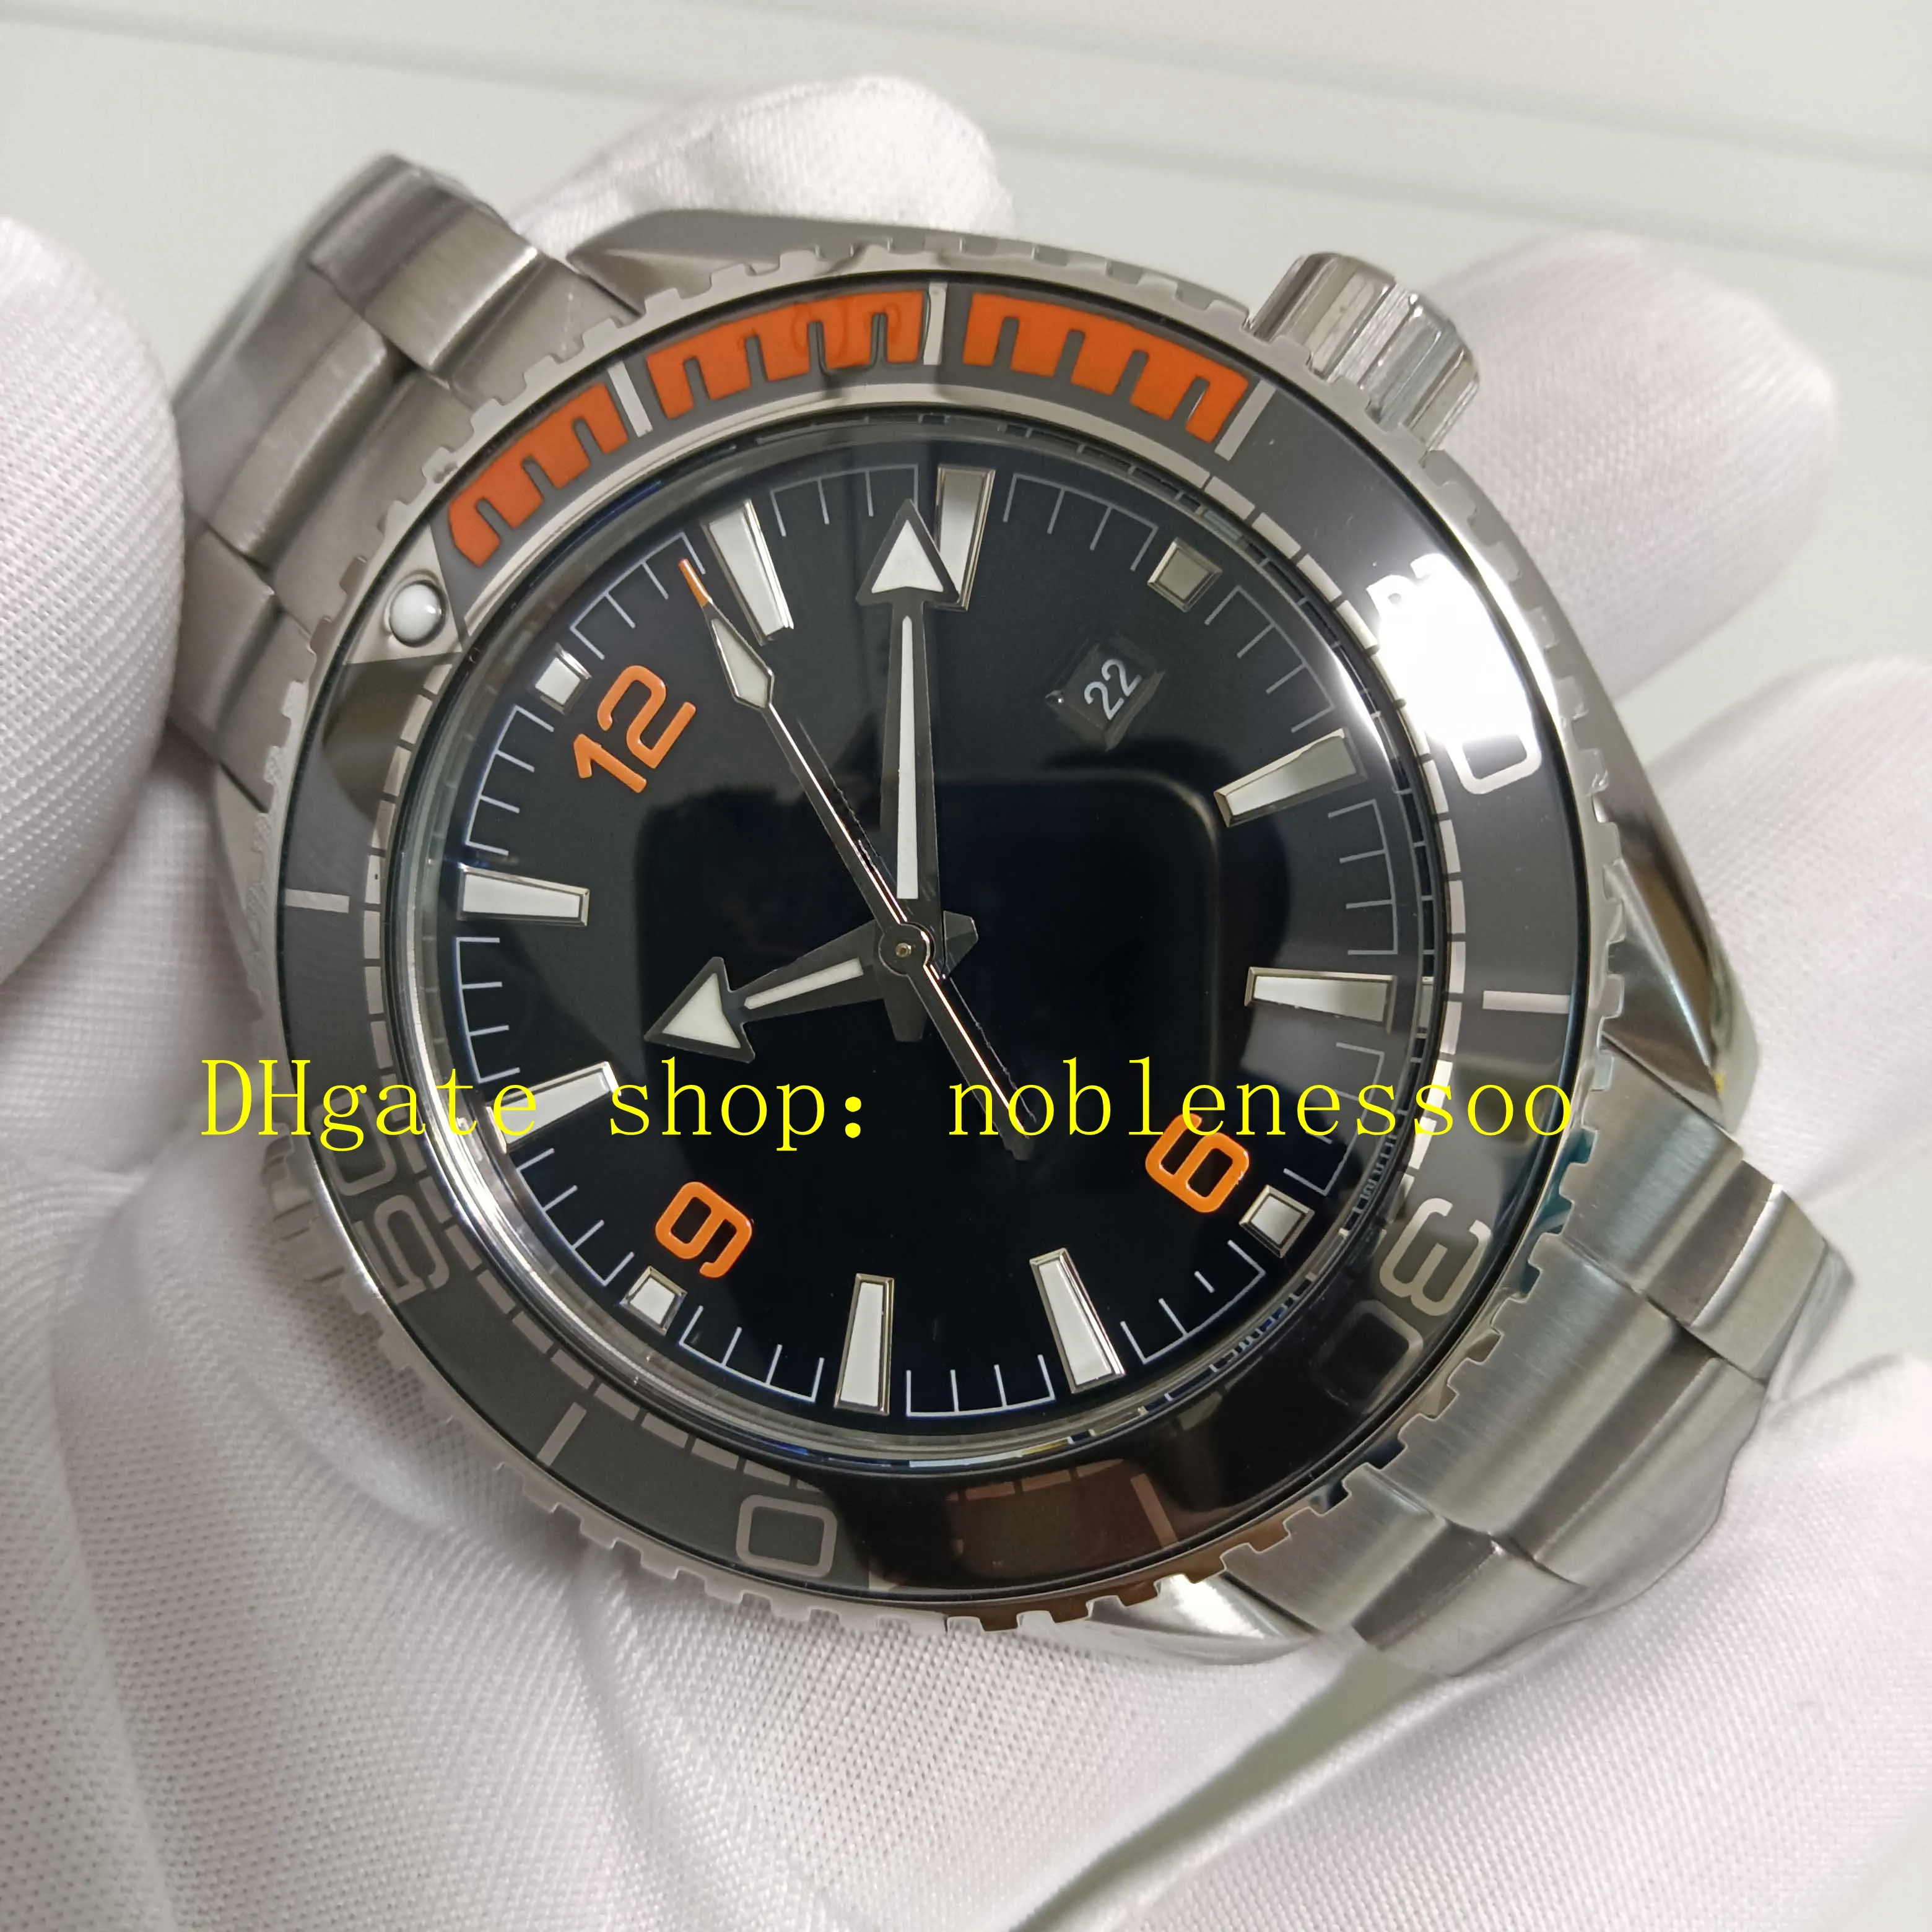 6 estilo foto real homens super relógio masculino mostrador preto 600m laranja moldura de cerâmica pulseira de aço inoxidável cal.8900 movimento automático relógios esportivos casuais relógios de pulso